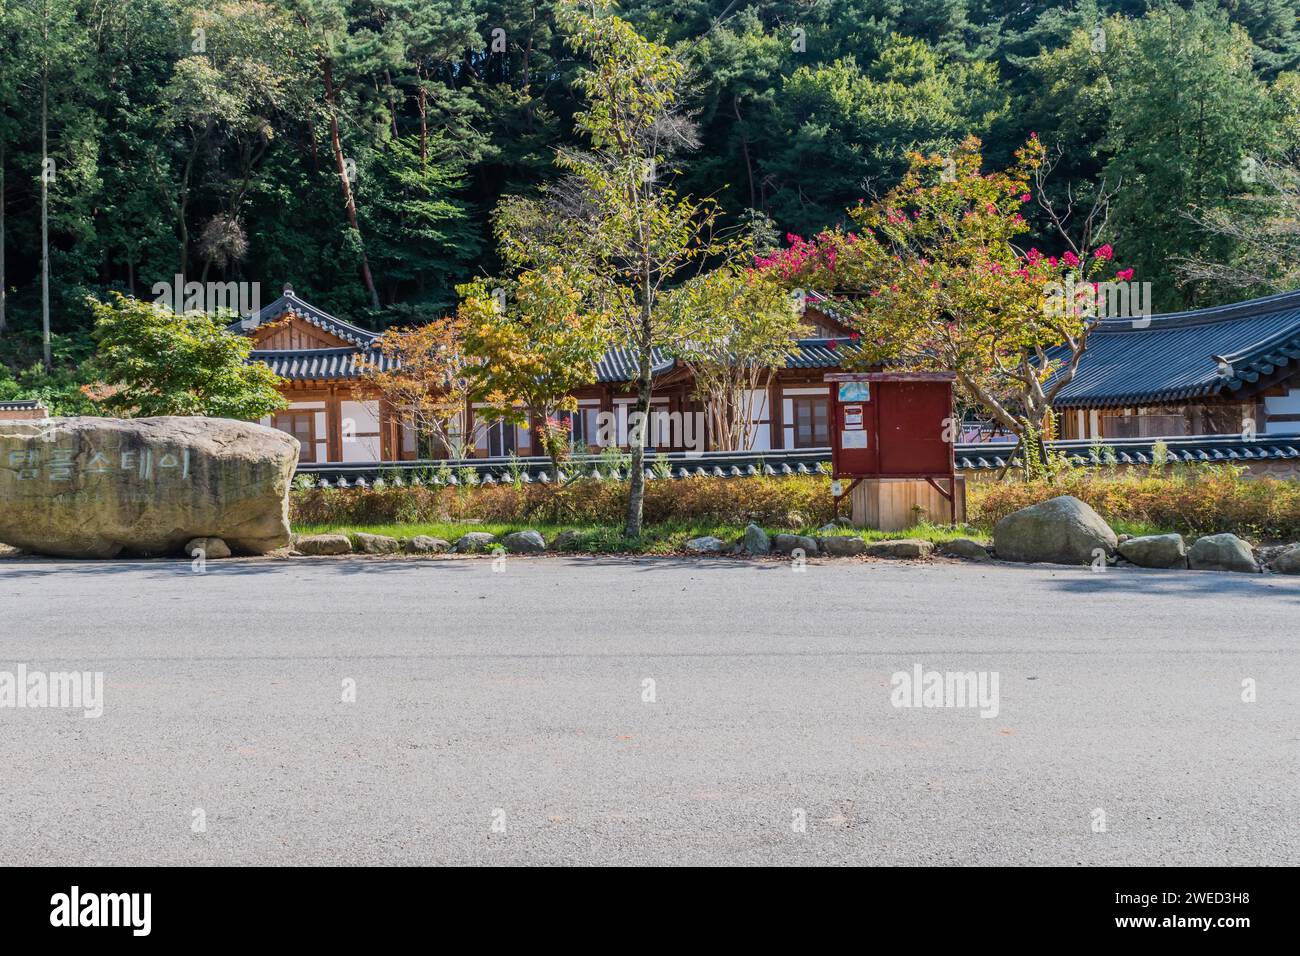 Les bâtiments utilisés pour les résidents du temple séjournent au temple Geumsansa avec des arbres verts luxuriants en arrière-plan à Gimje-si, Corée du Sud Banque D'Images